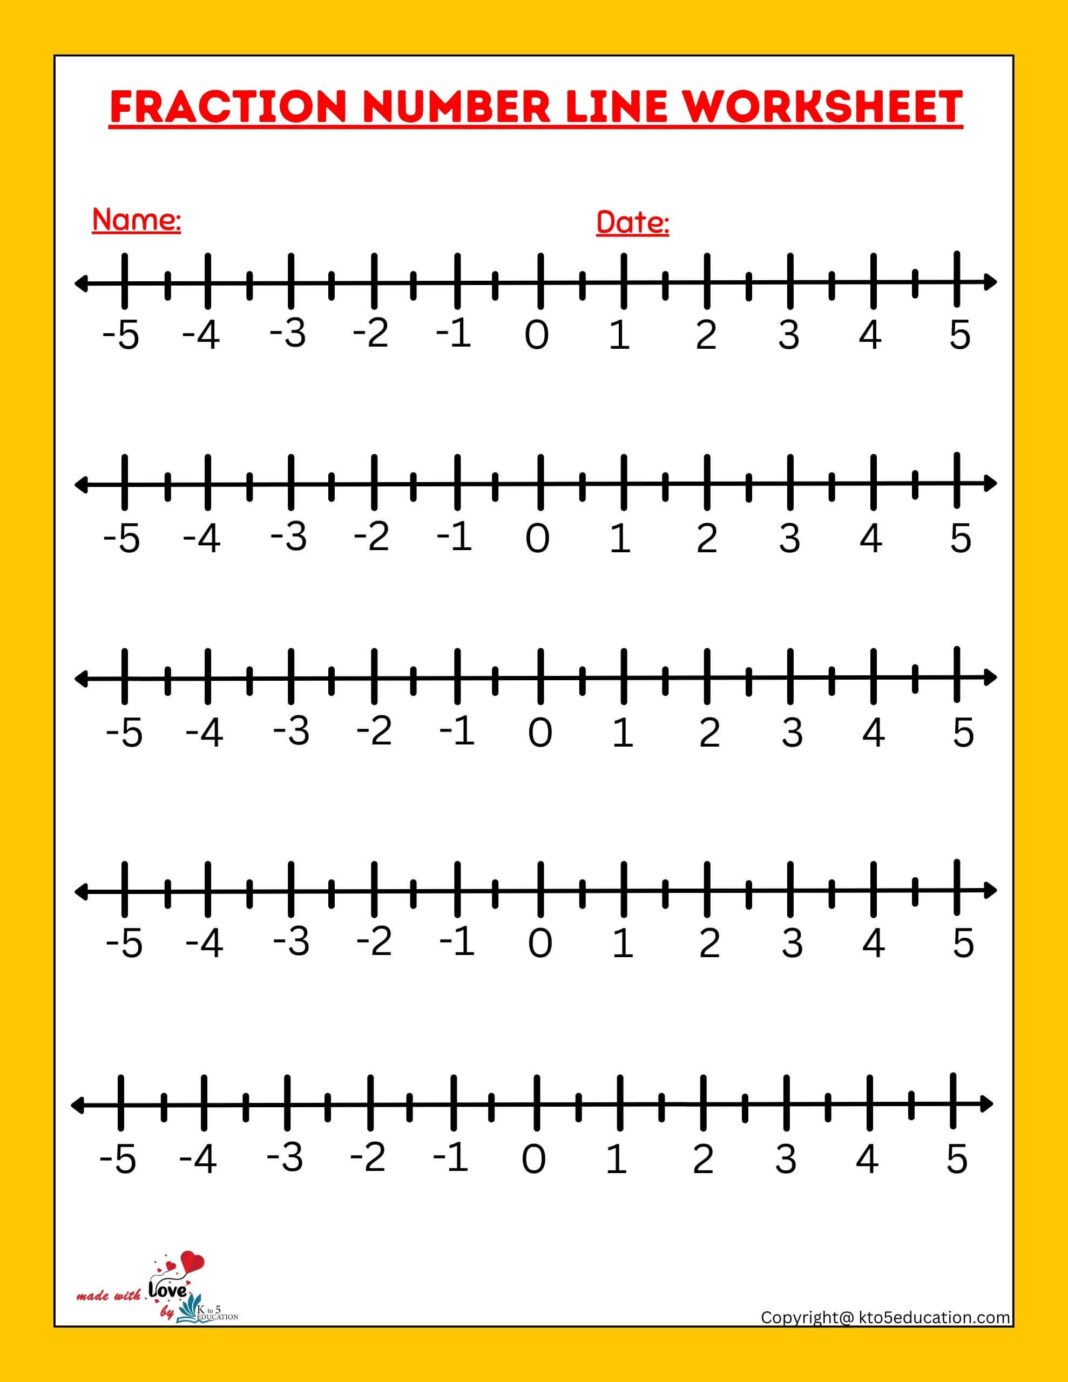 fraction-number-lines-worksheet-free-download